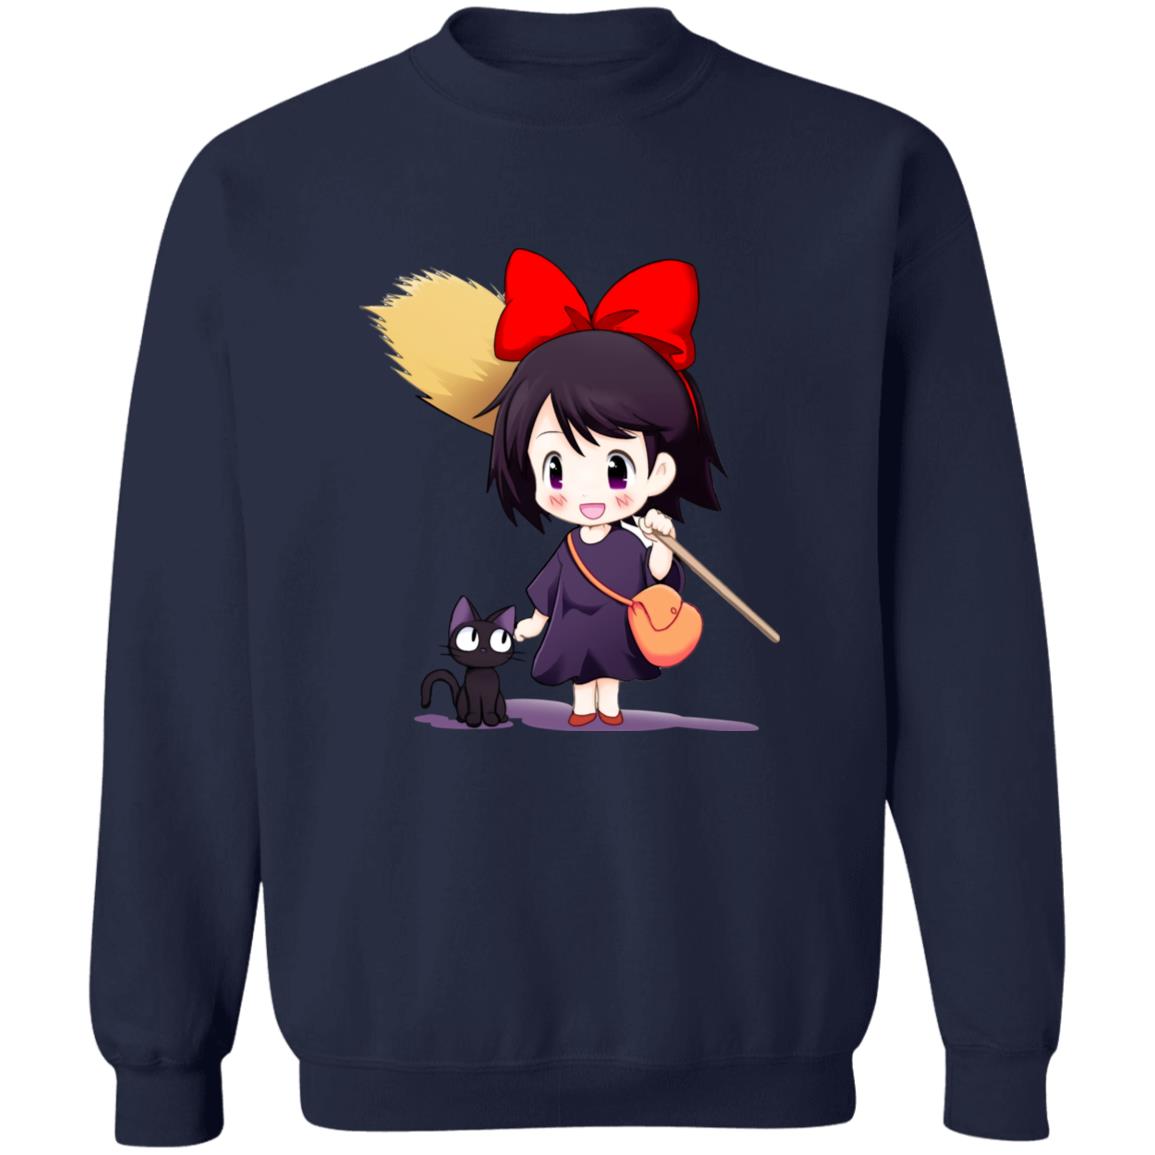 Kiki’s Delivery Service Chibi Sweatshirt